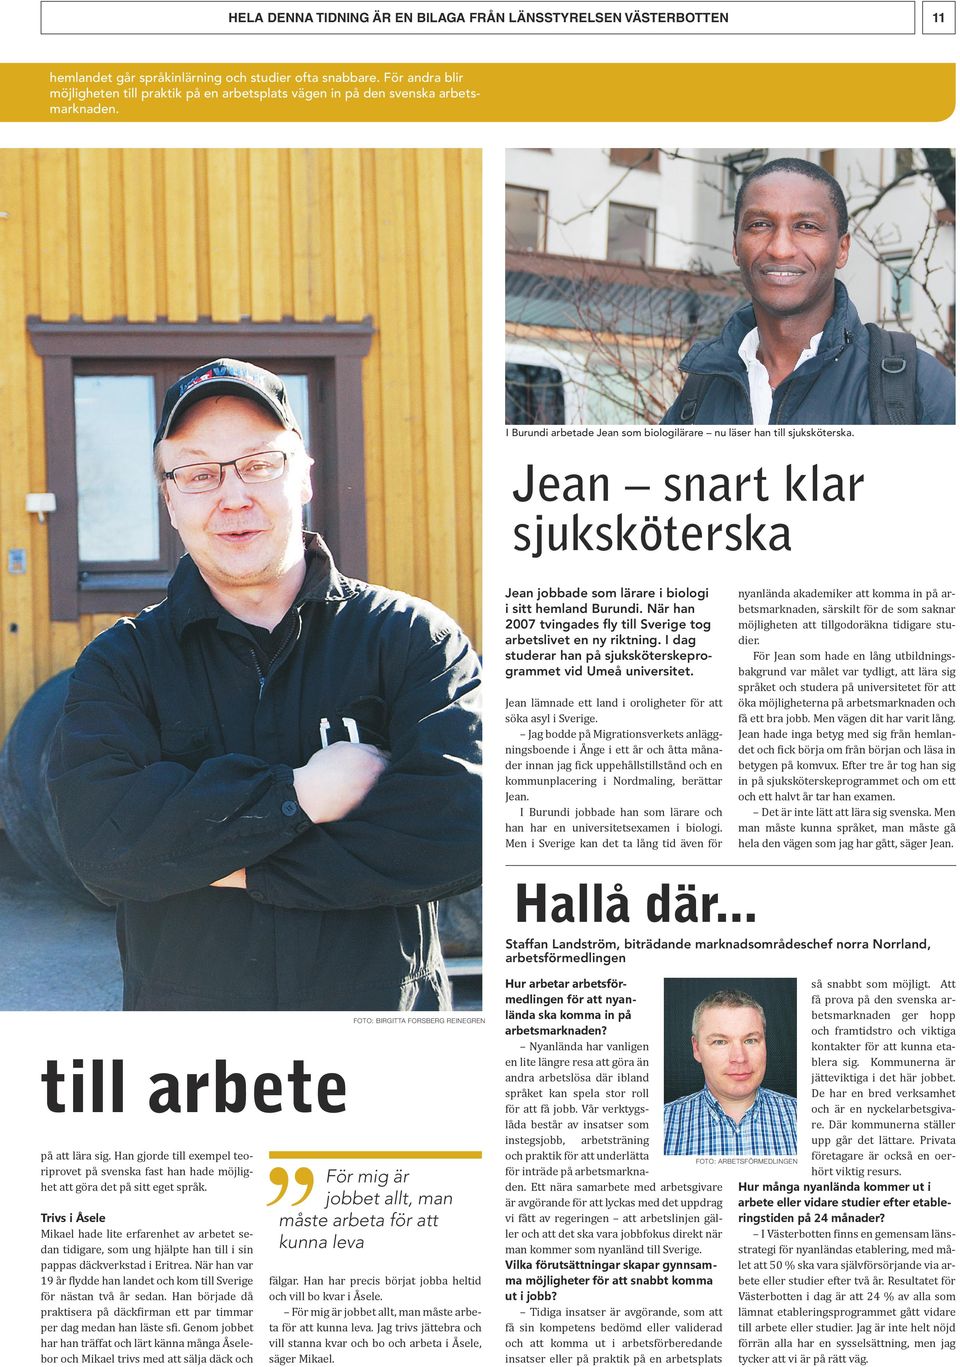 När han 2007 tvingades fly till Sverige tog arbetslivet en ny riktning. I dag studerar han på sjuksköterskeprogrammet vid Umeå universitet.